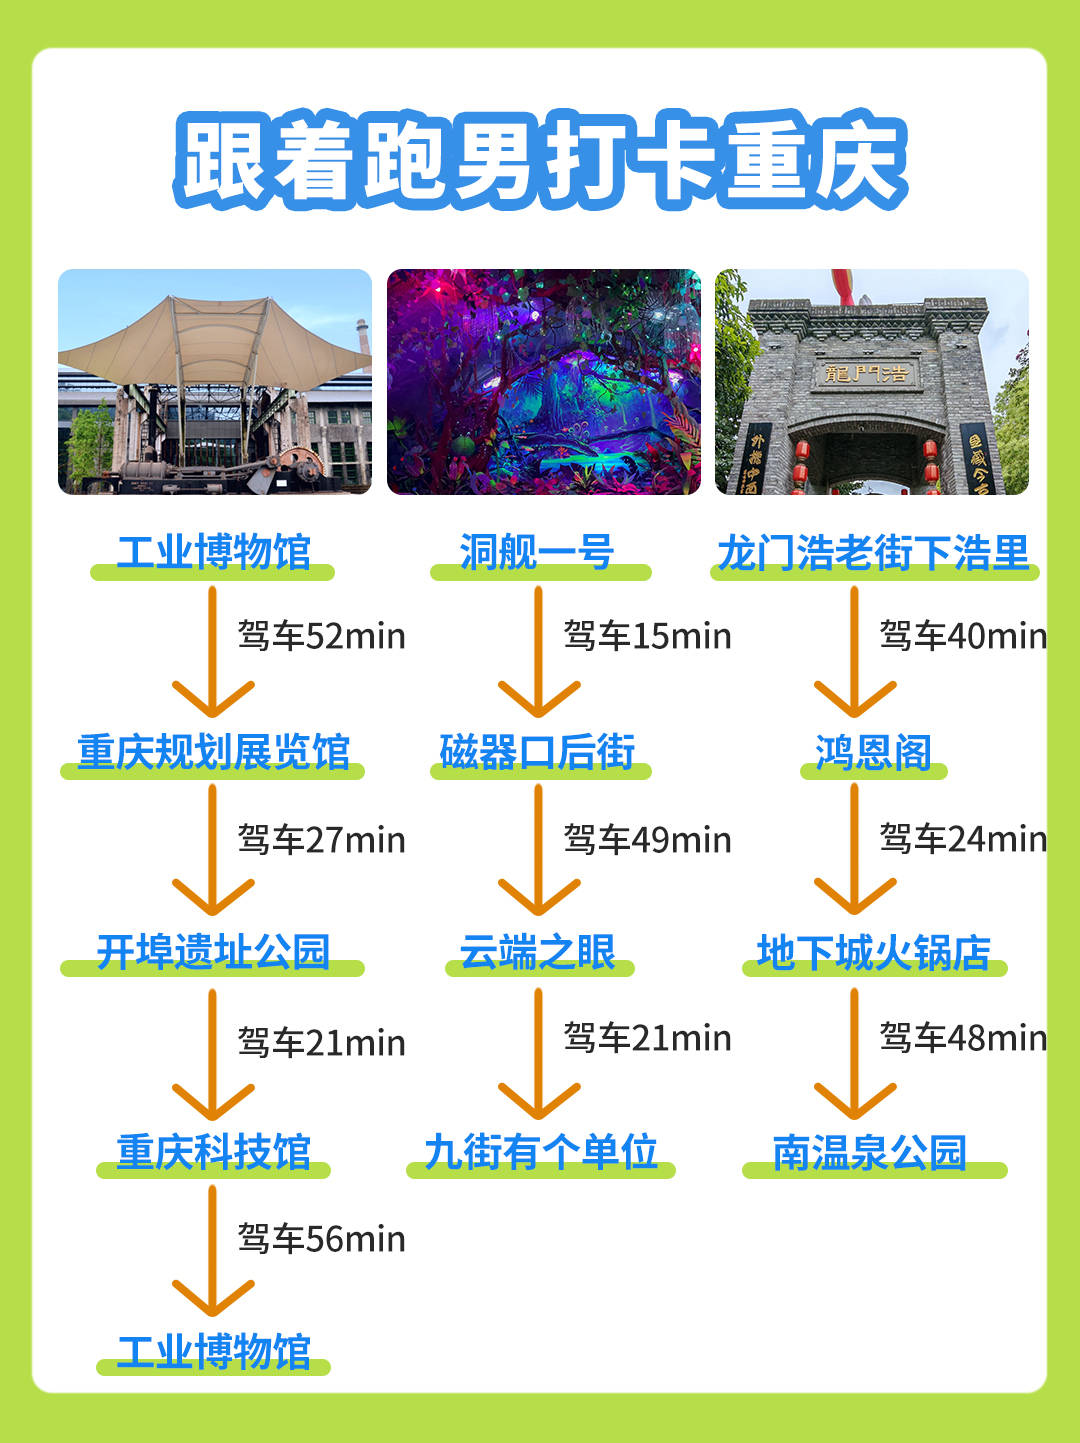 重庆云端之眼门票多少钱?该如何购票?看这篇就对了!